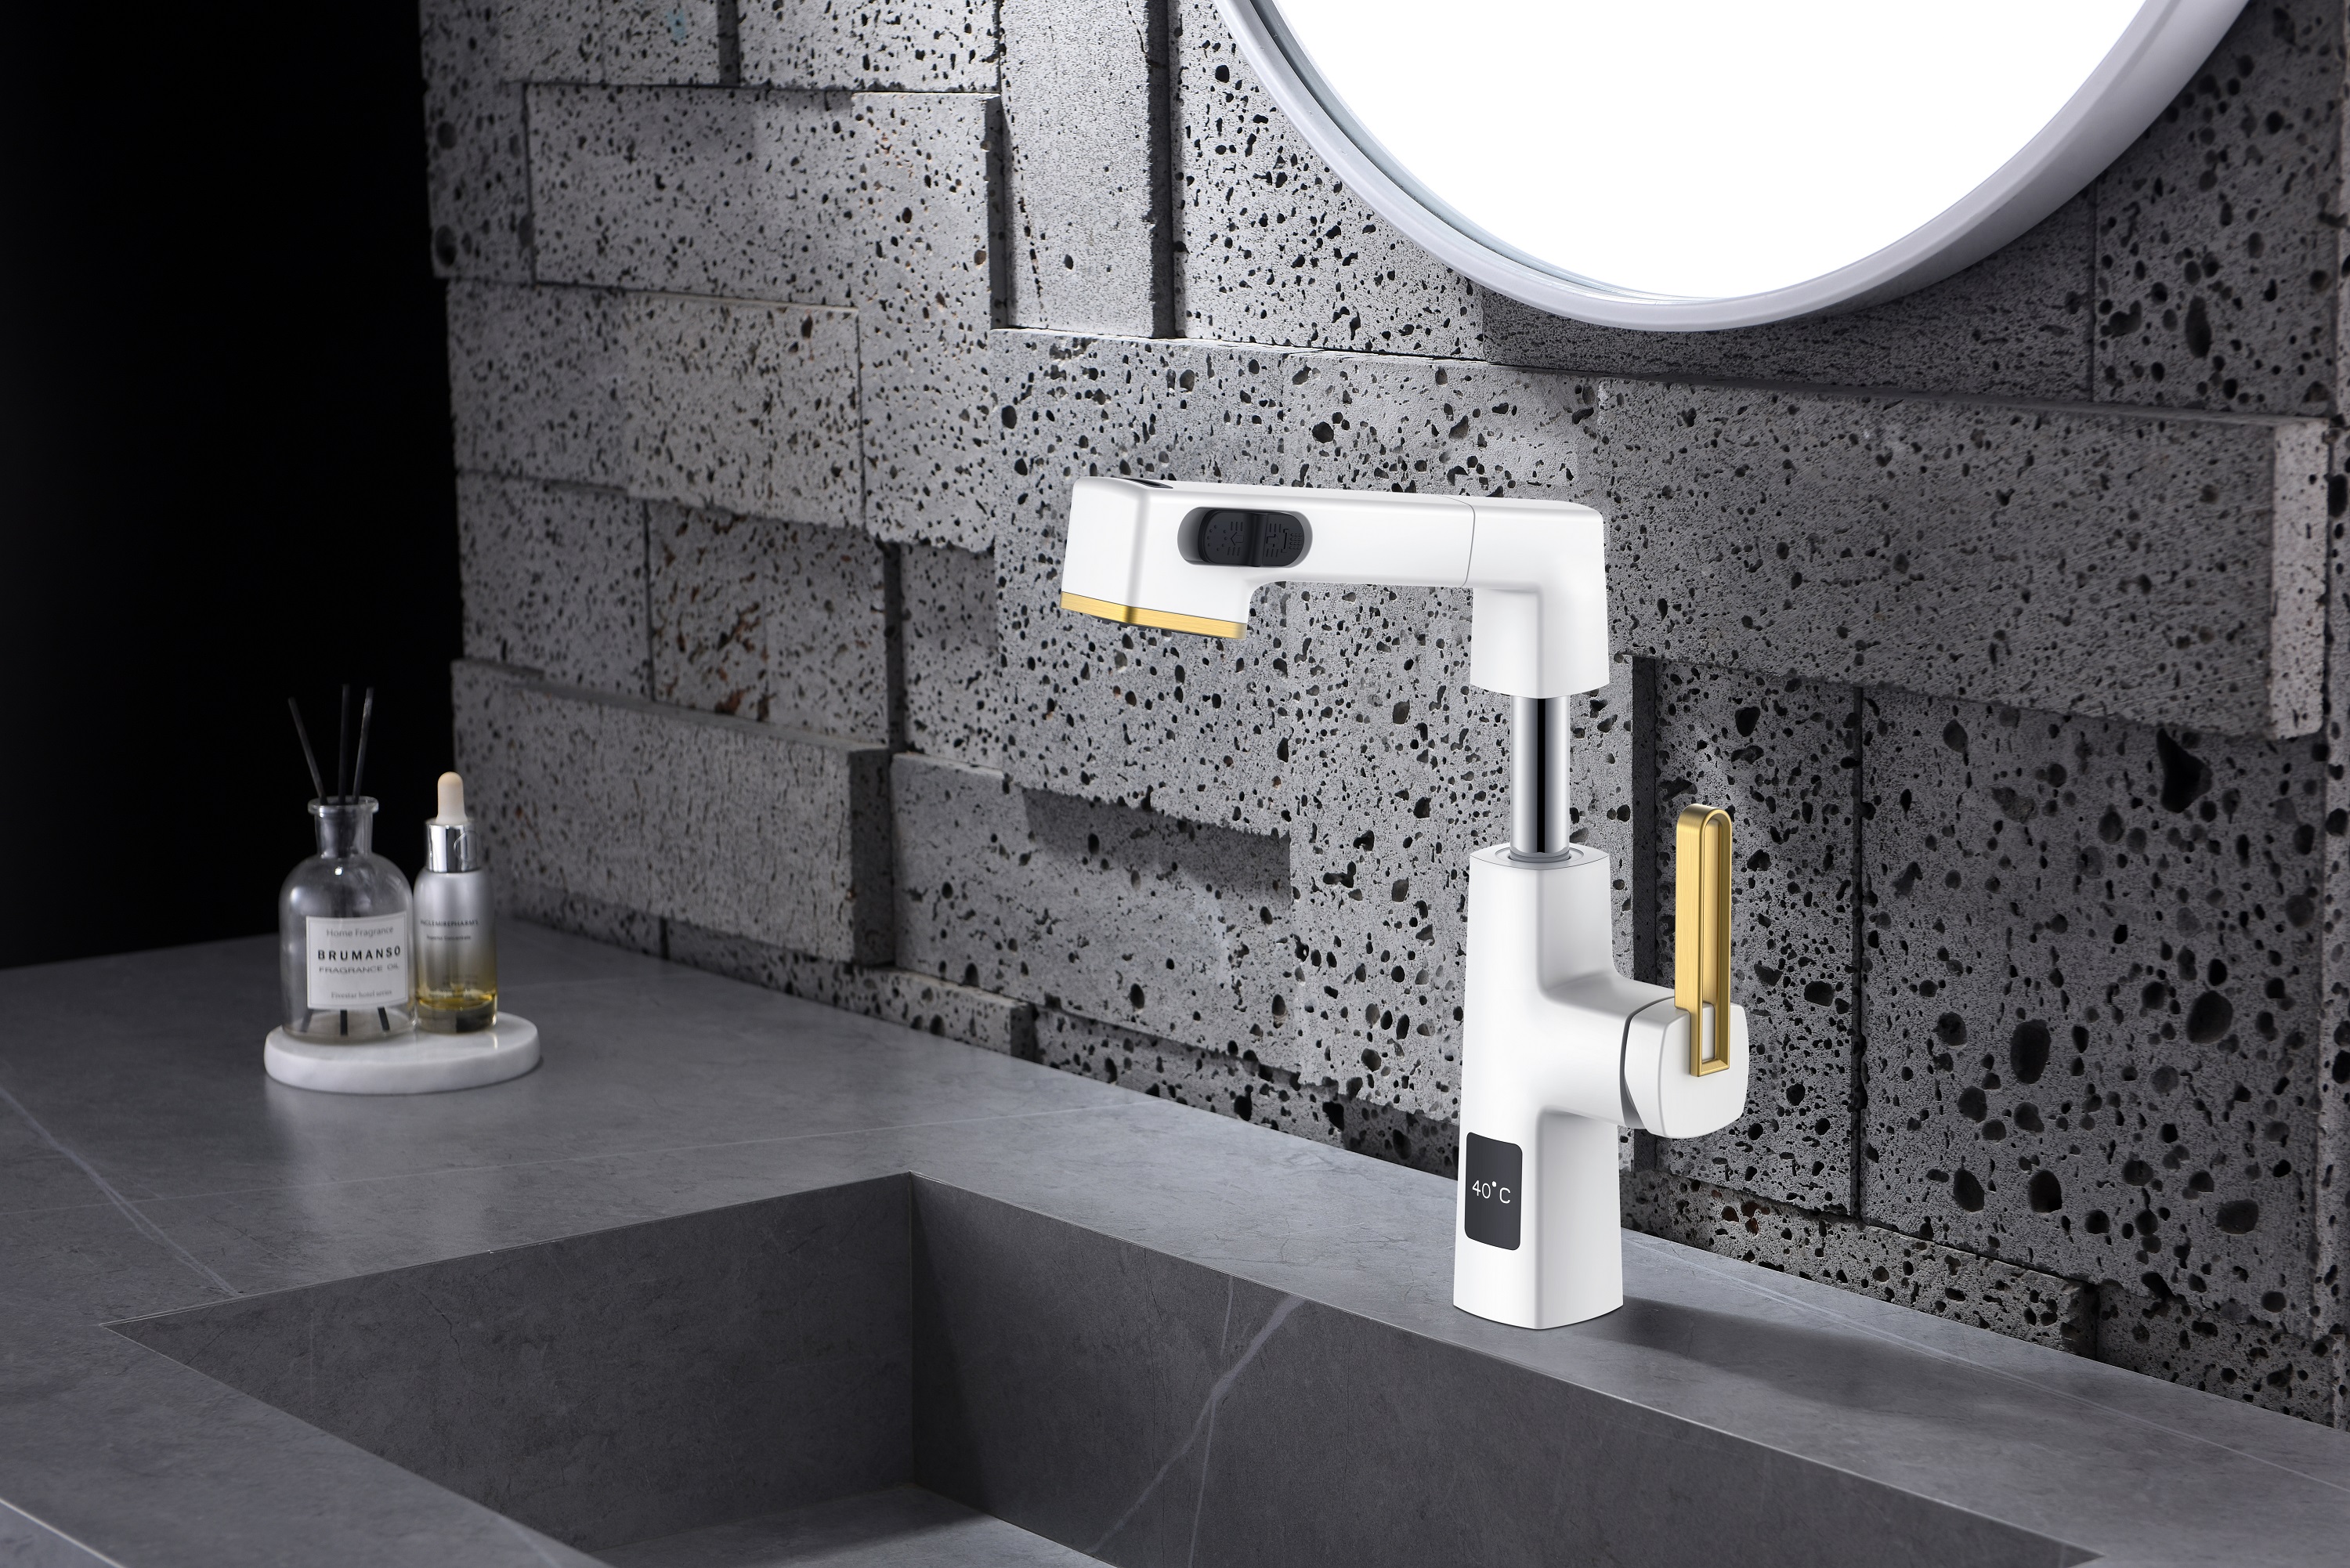  Visor de temperatura Design exclusivo Preto inoxidável e ouro escovado Torneira de banheiro retrátil Altura ajustável